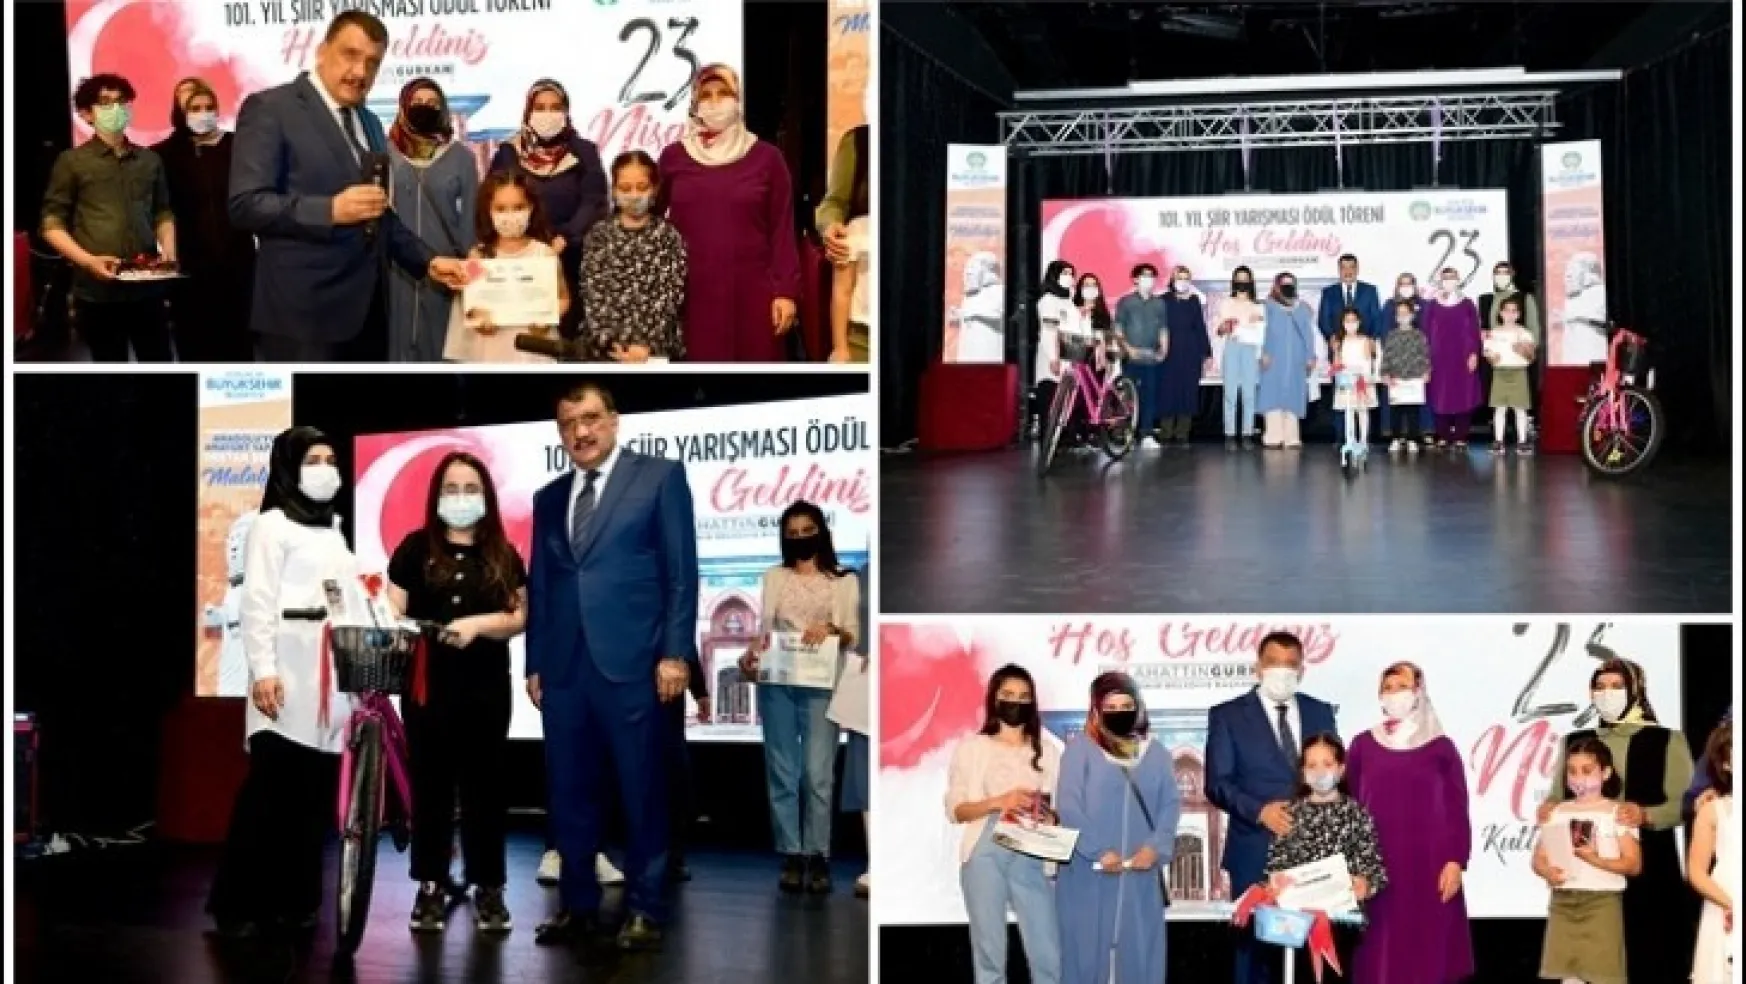 Büyükşehir Belediyesi 23 Nisan 101. Yıl Şiir Yarışması Ödül Töreni Yapıldı